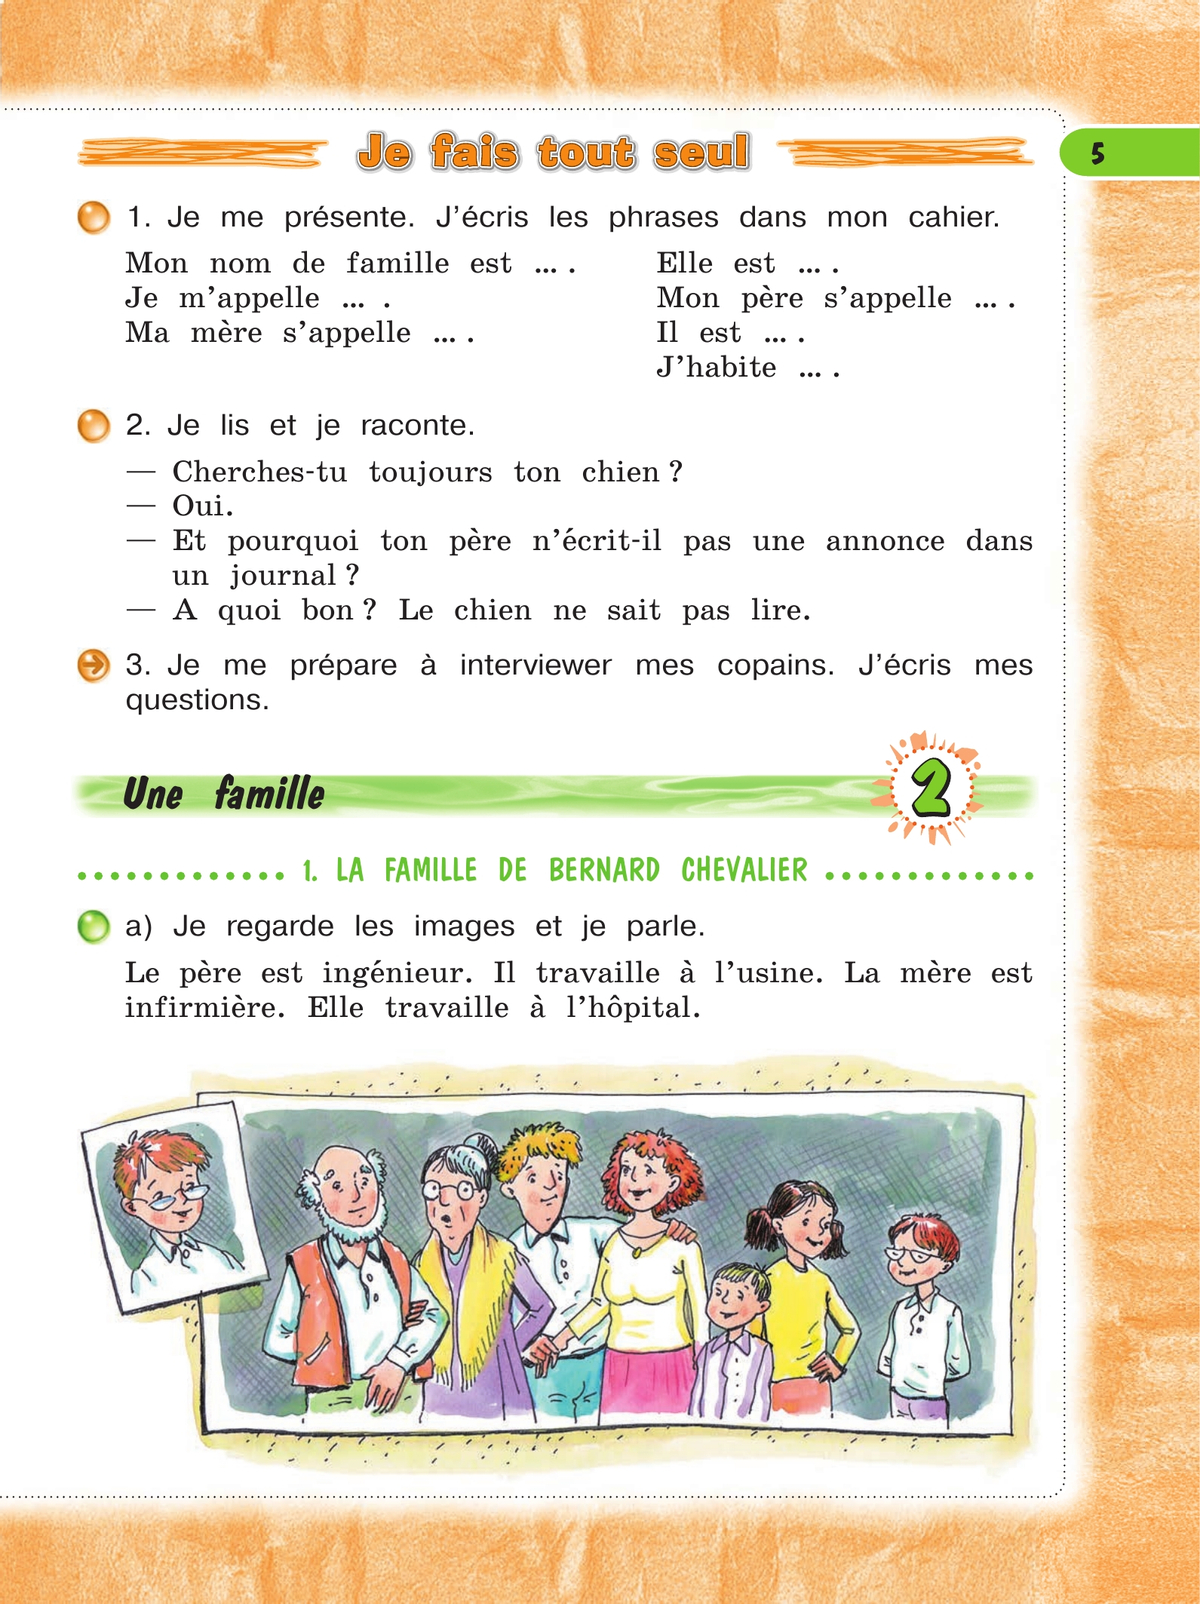 Французский язык. 4 класс. Учебник. В 2 ч. Часть 2 7